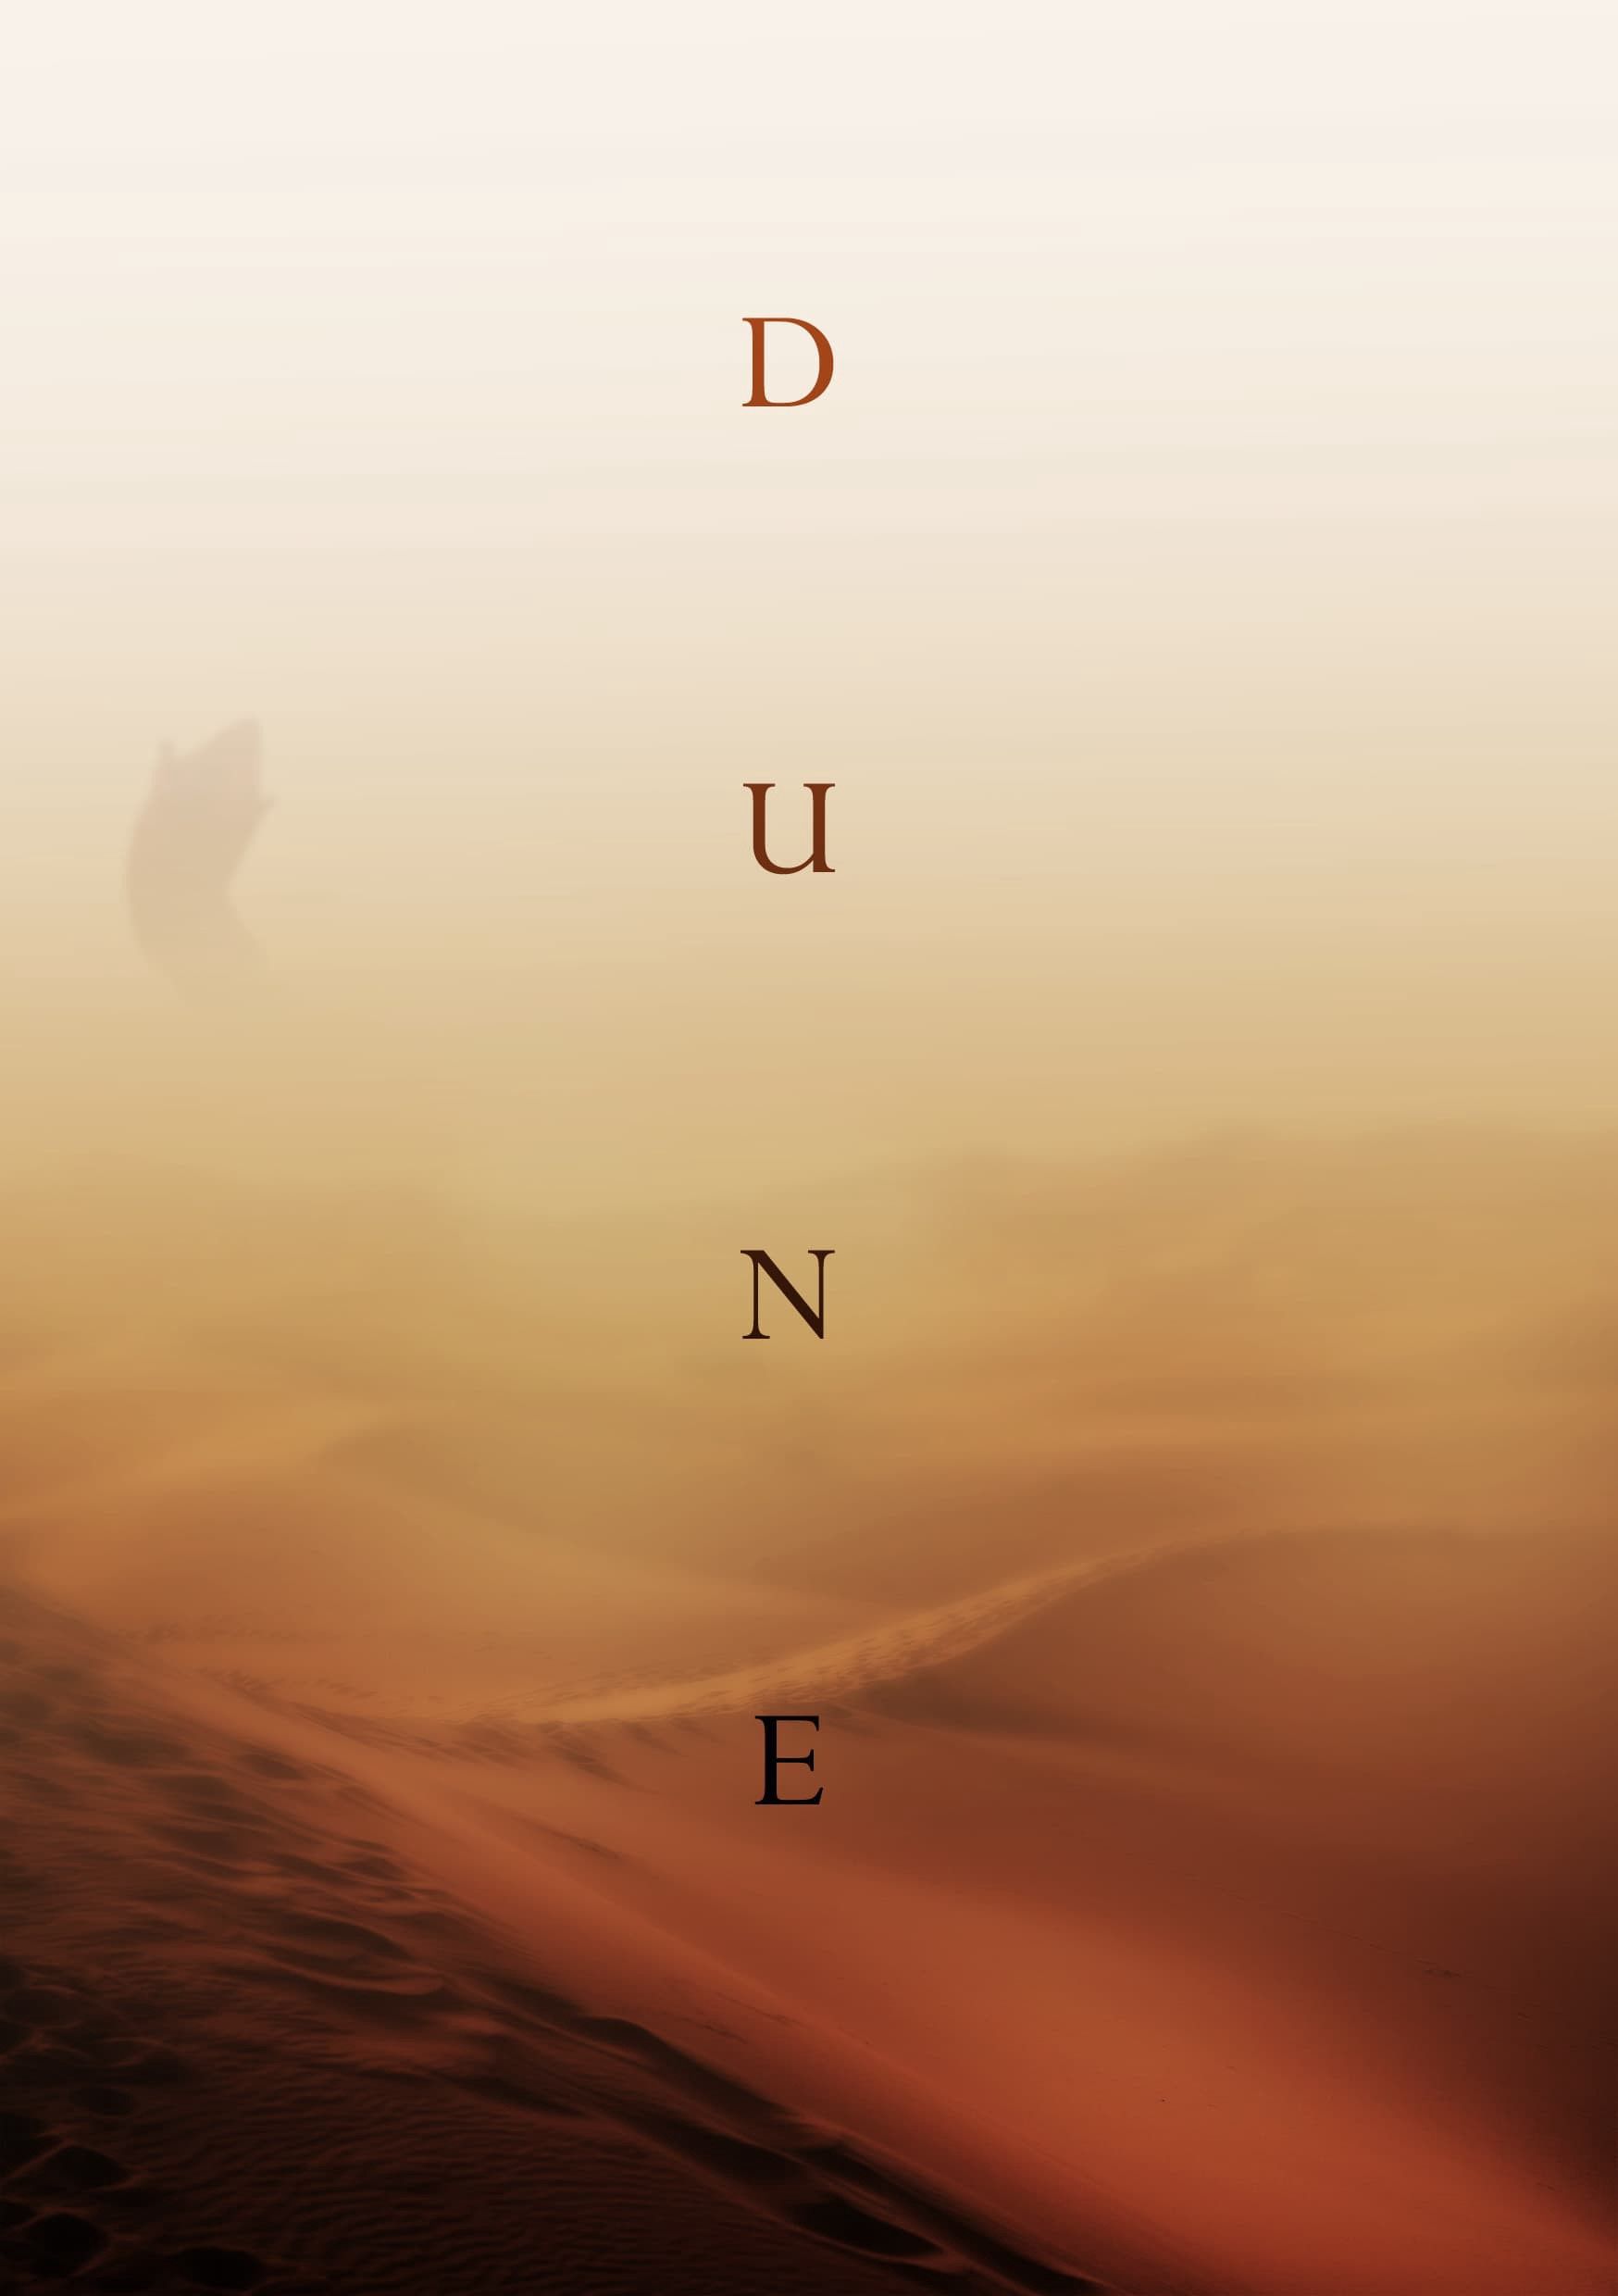 Will Denis Villeneuve's remake of Dune take a golden opportunity